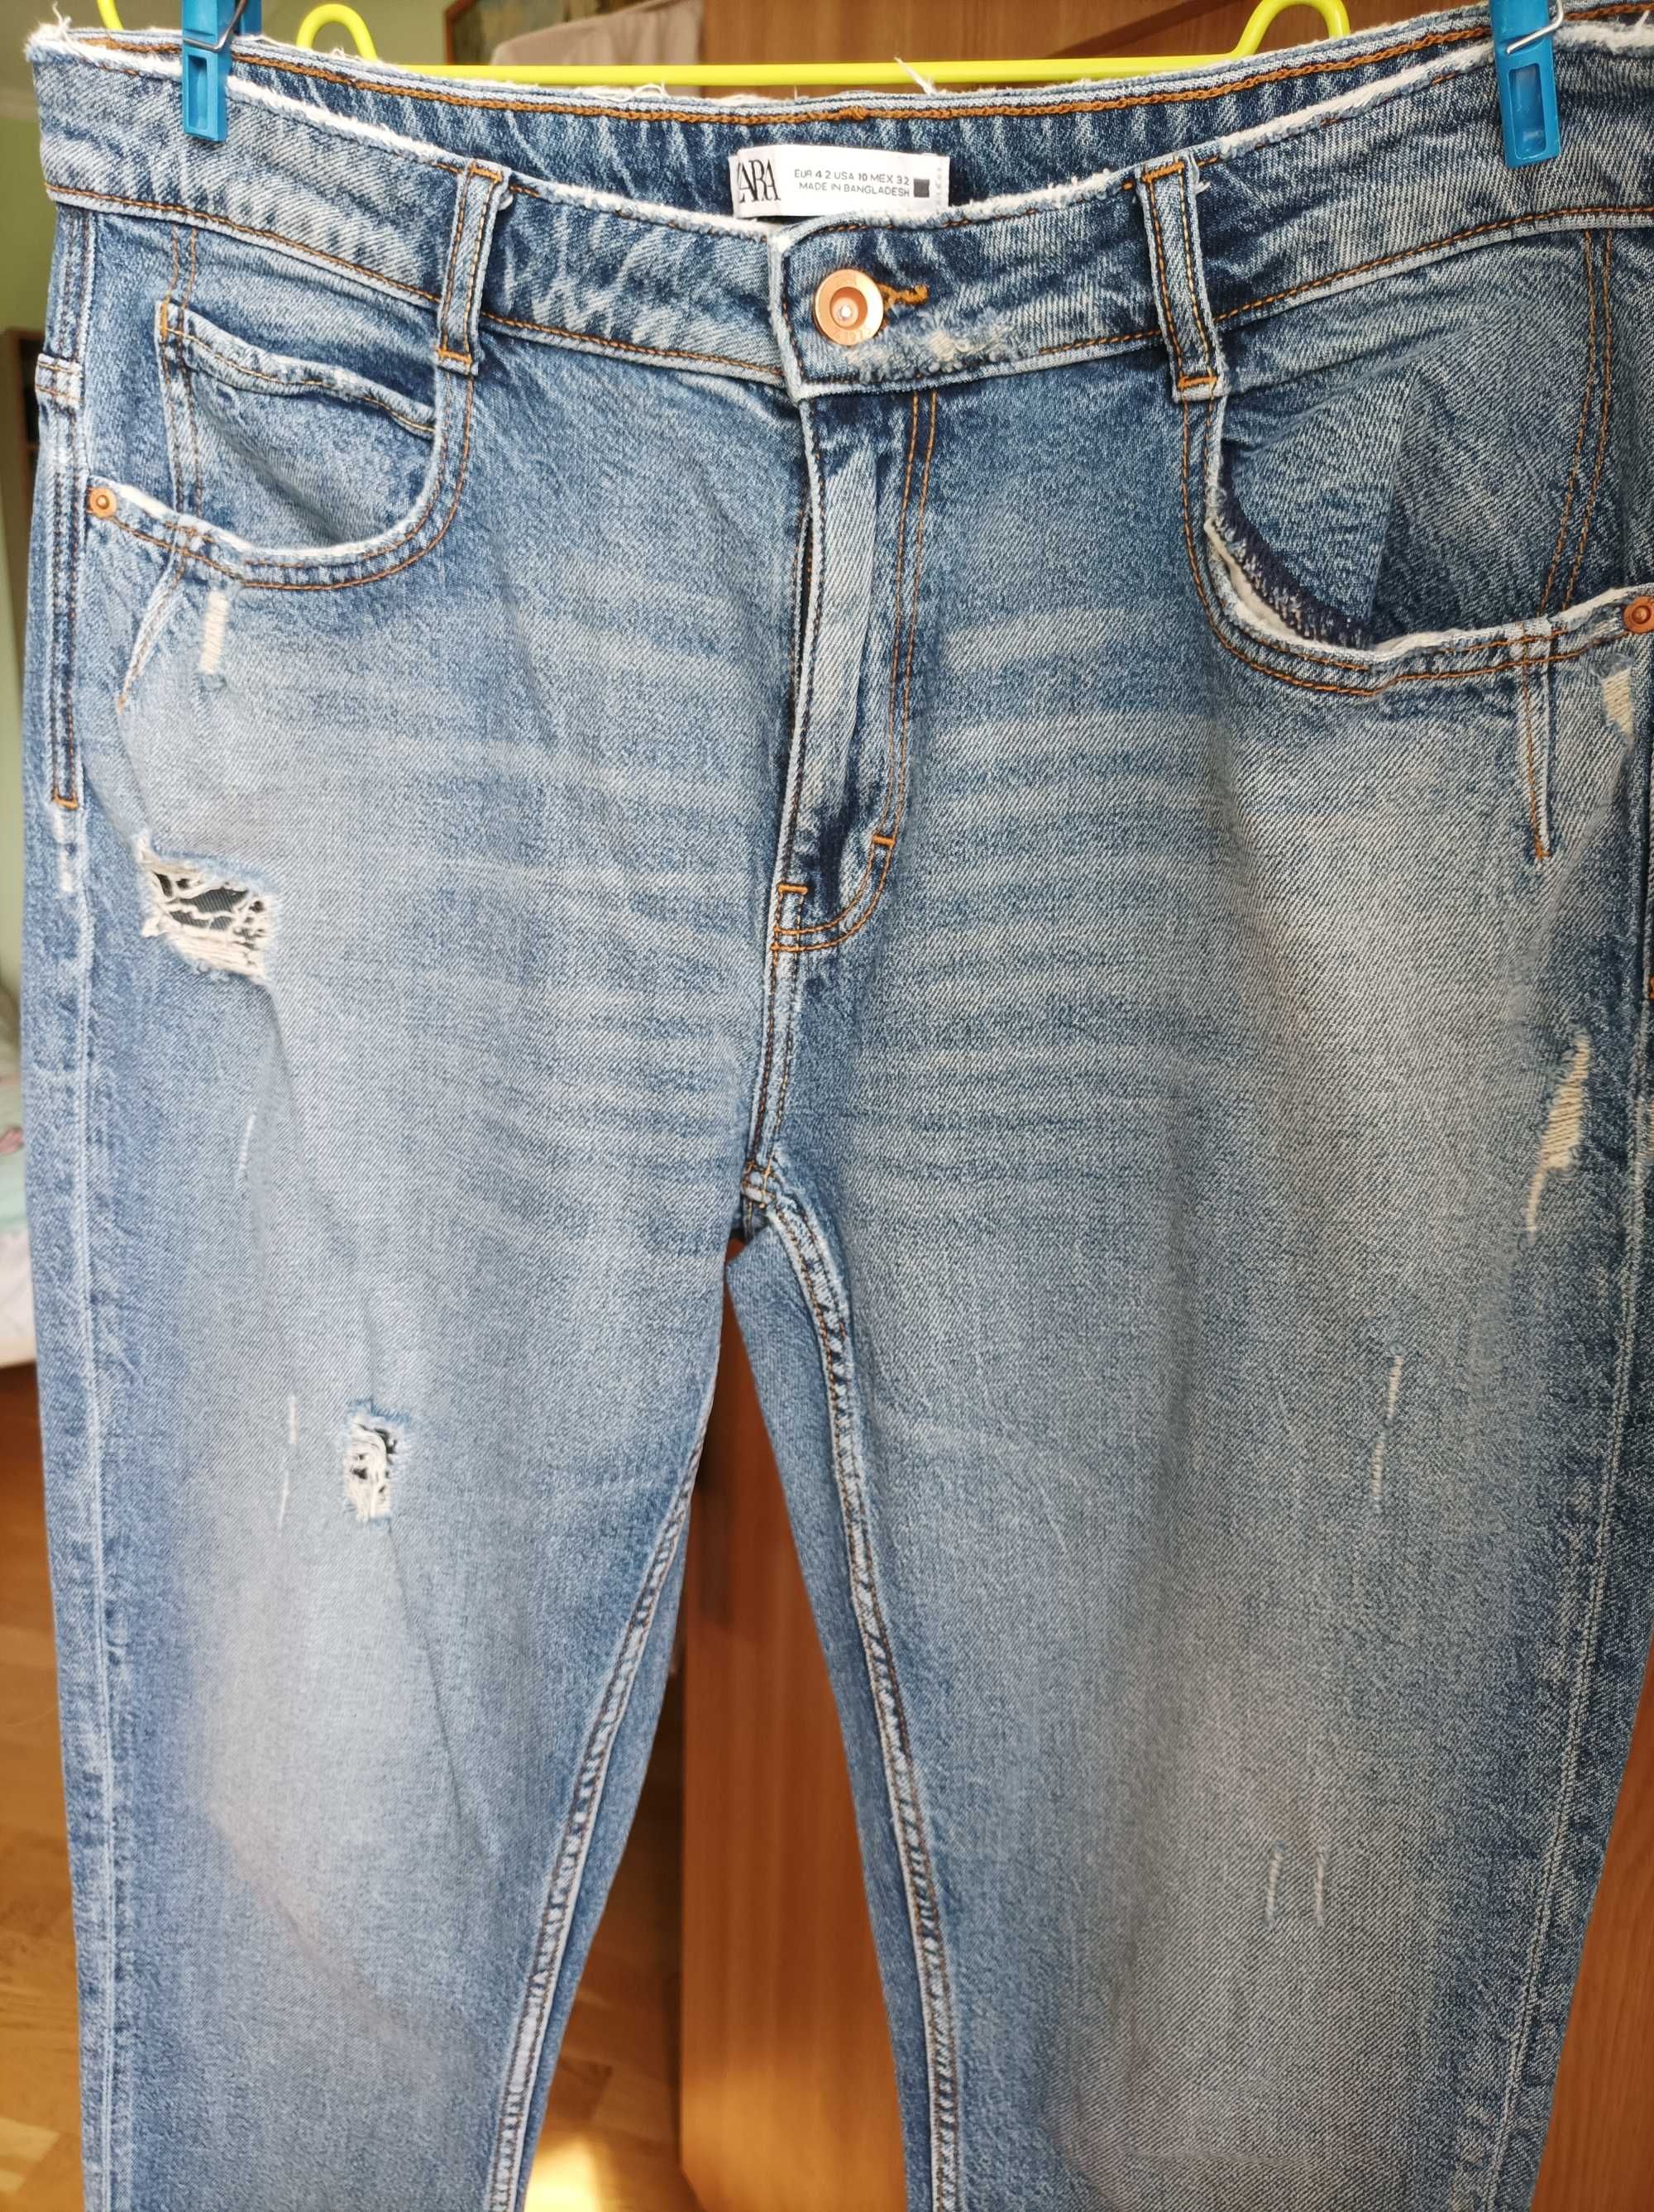 Жіночі джинси ZARA + шорти ZARA у подарунок